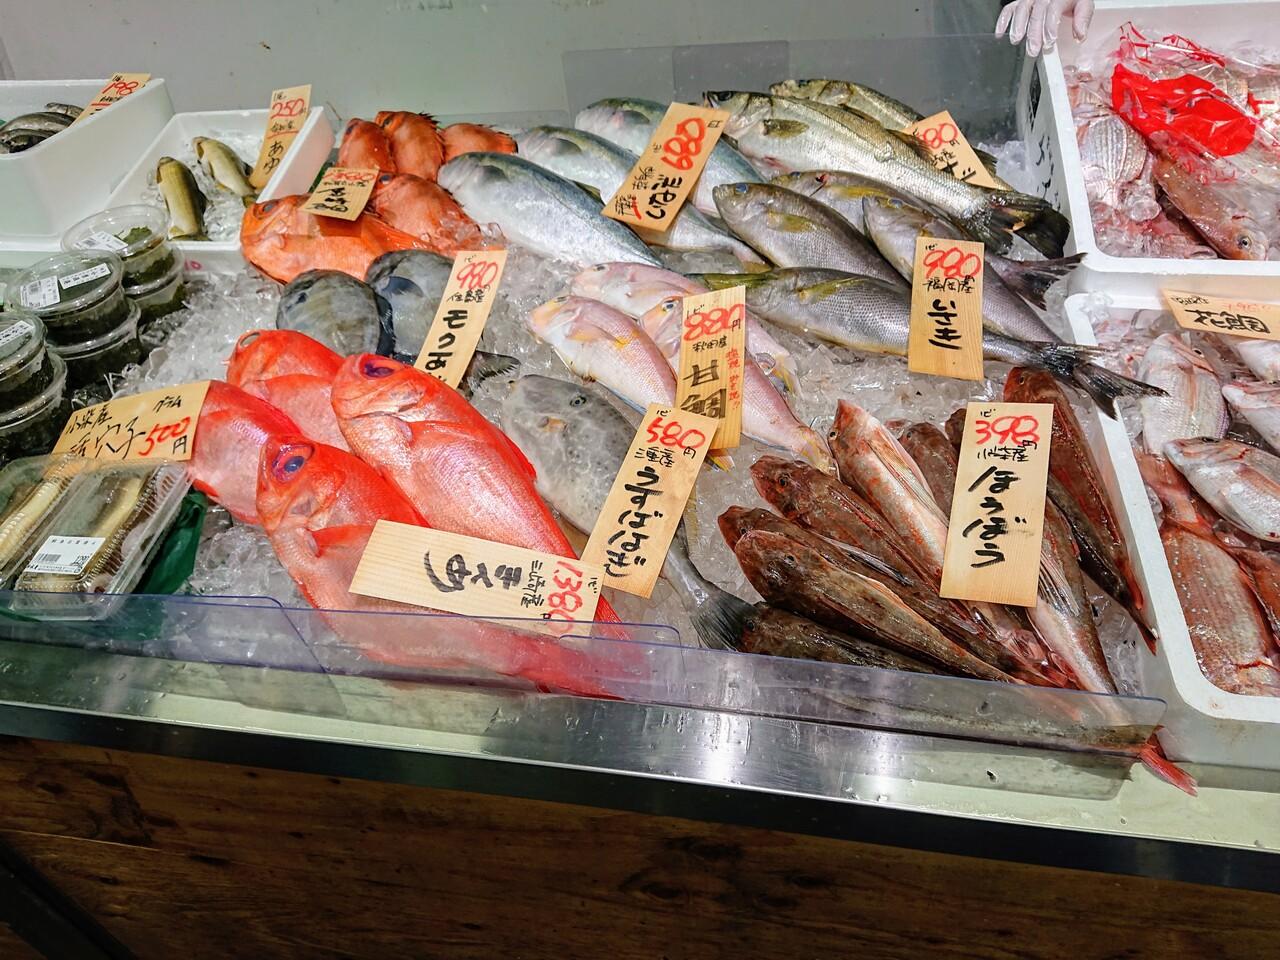 ブランチ横浜南部市場でお買い物 八景島 神奈川県 の旅行記 ブログ By わんこさん フォートラベル